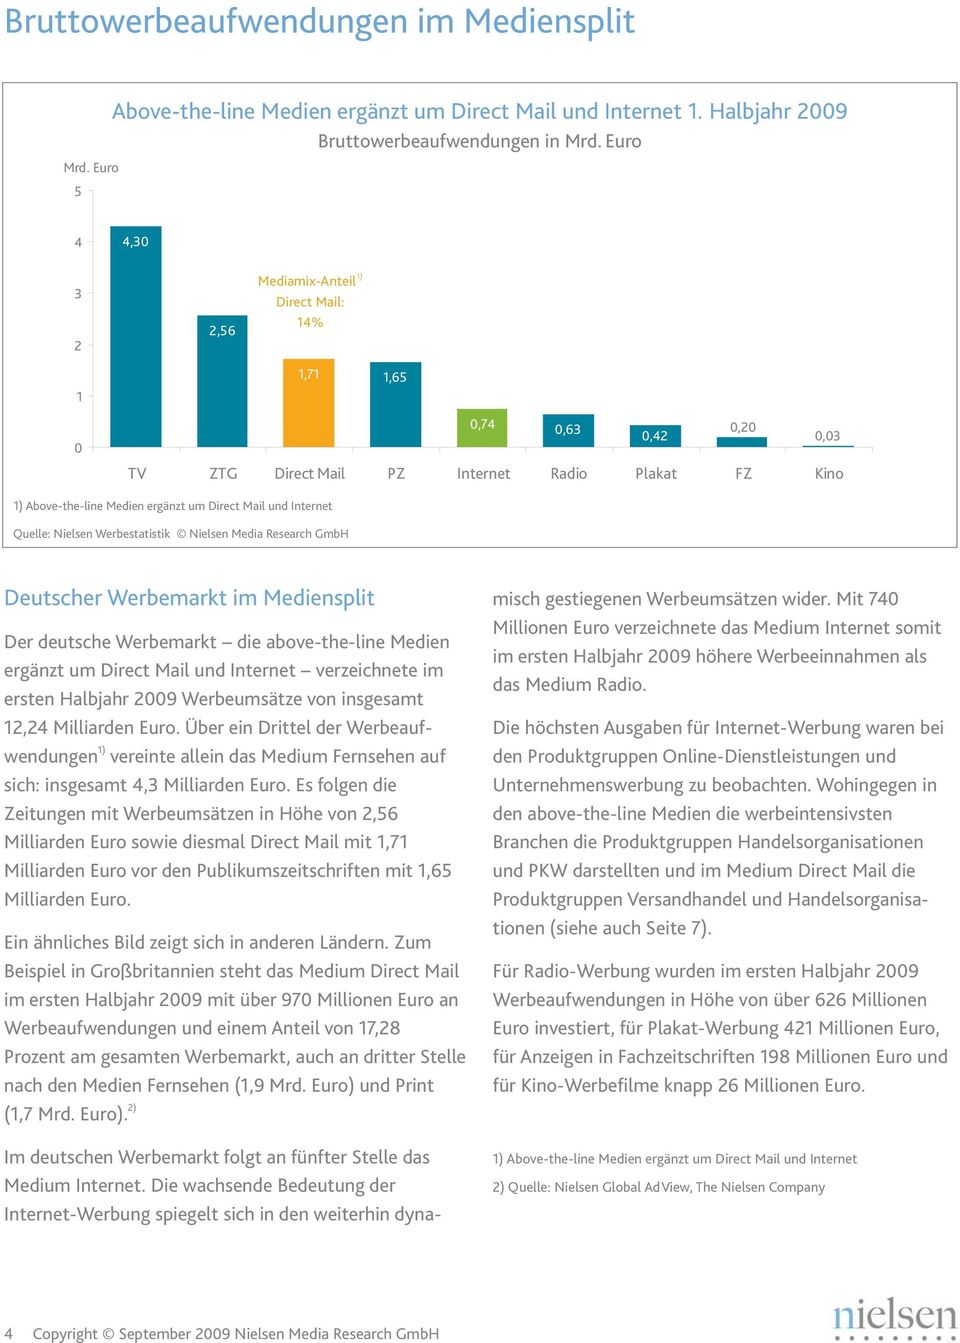 Werbemarkt die above-the-line Medien ergänzt um Direct Mail und Internet verzeichnete im ersten Halbjahr 2009 Werbeumsätze von insgesamt 12,24 Milliarden Euro.